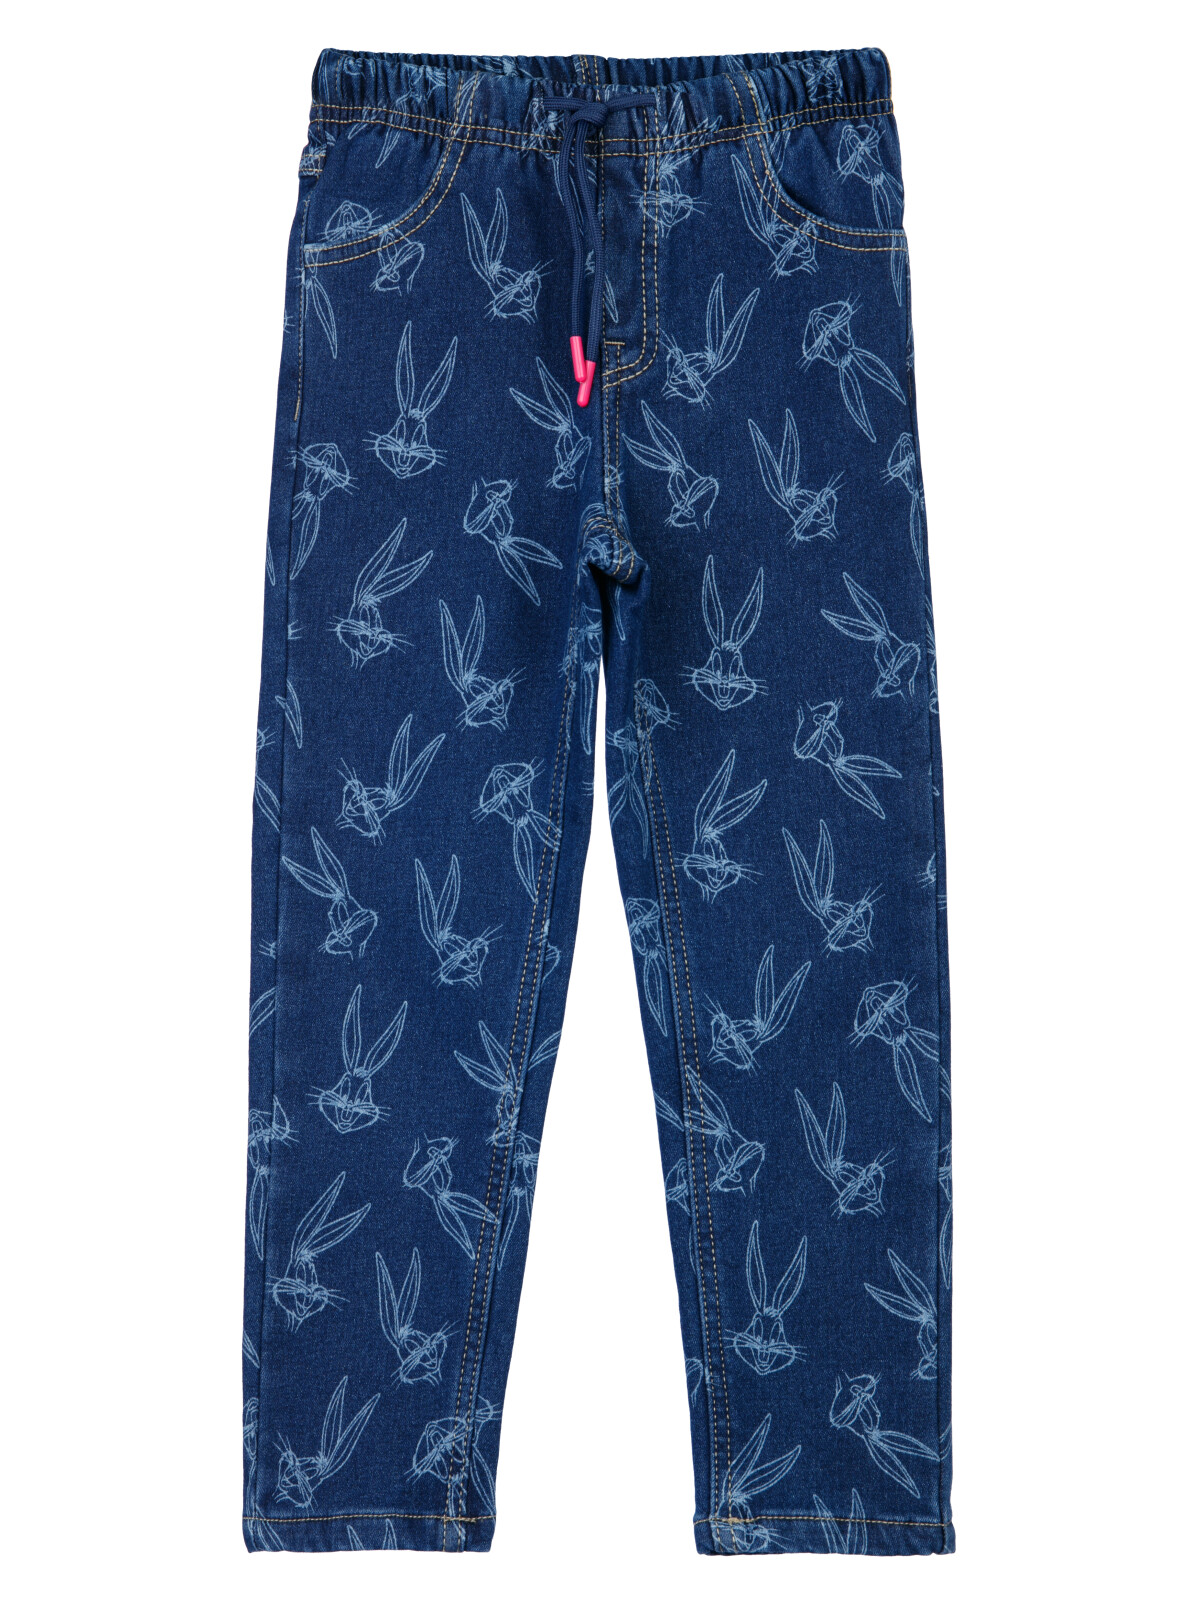 Брюки текстильные джинсовые утепленные флисом для девочек PlayToday, тёмно-синий, 110